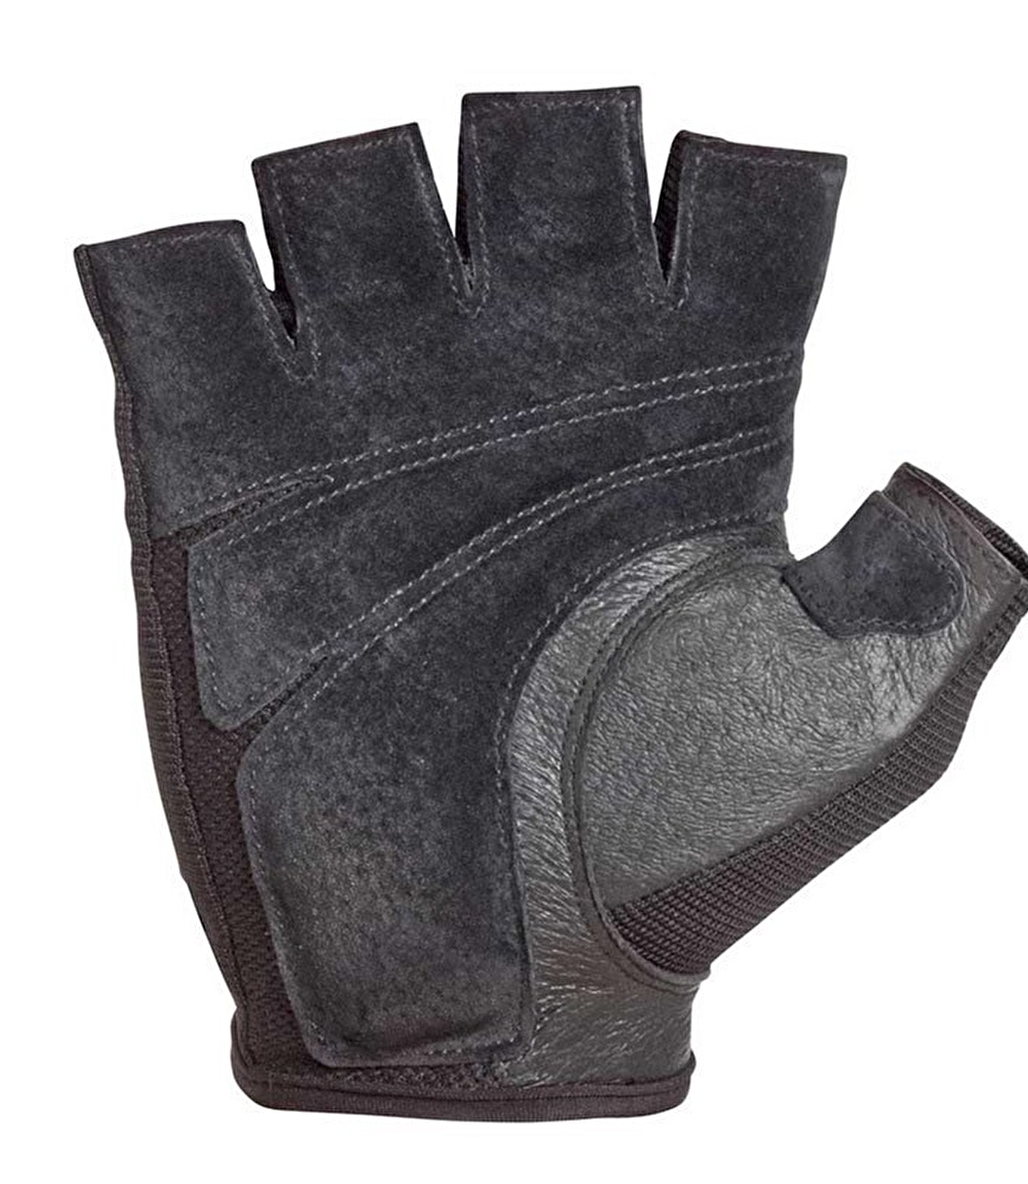 Harbinger Power Gloves Ağırlık Eldiveni Siyah